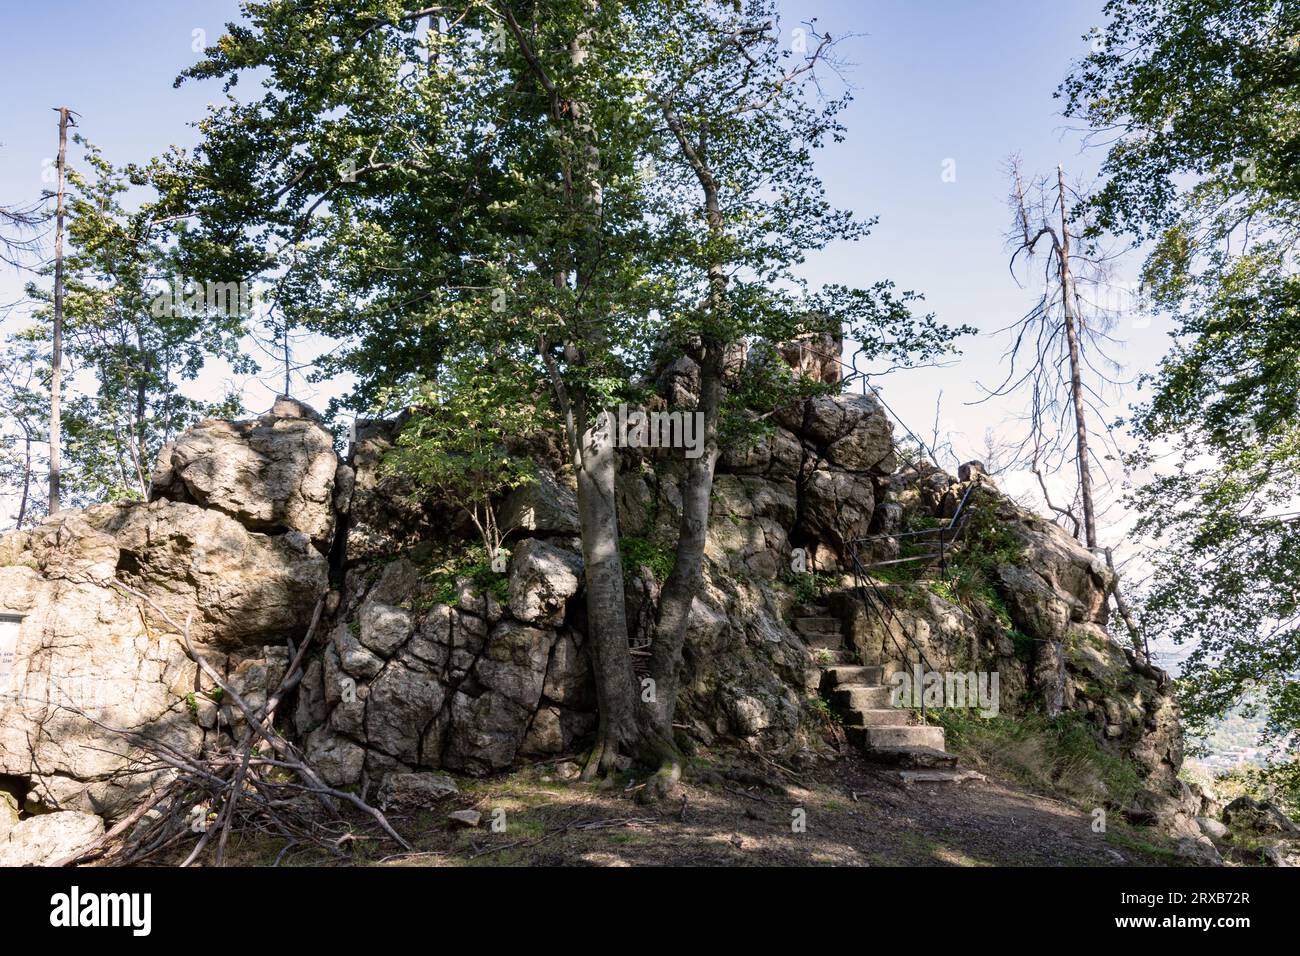 DAS Hauptmotiv die Felsformation Elfenstein liegt etwas im Hintergrund des Bildes., IM Vordergrund und und auch im Hintergrund sind Bäume, Baumstämme Foto Stock